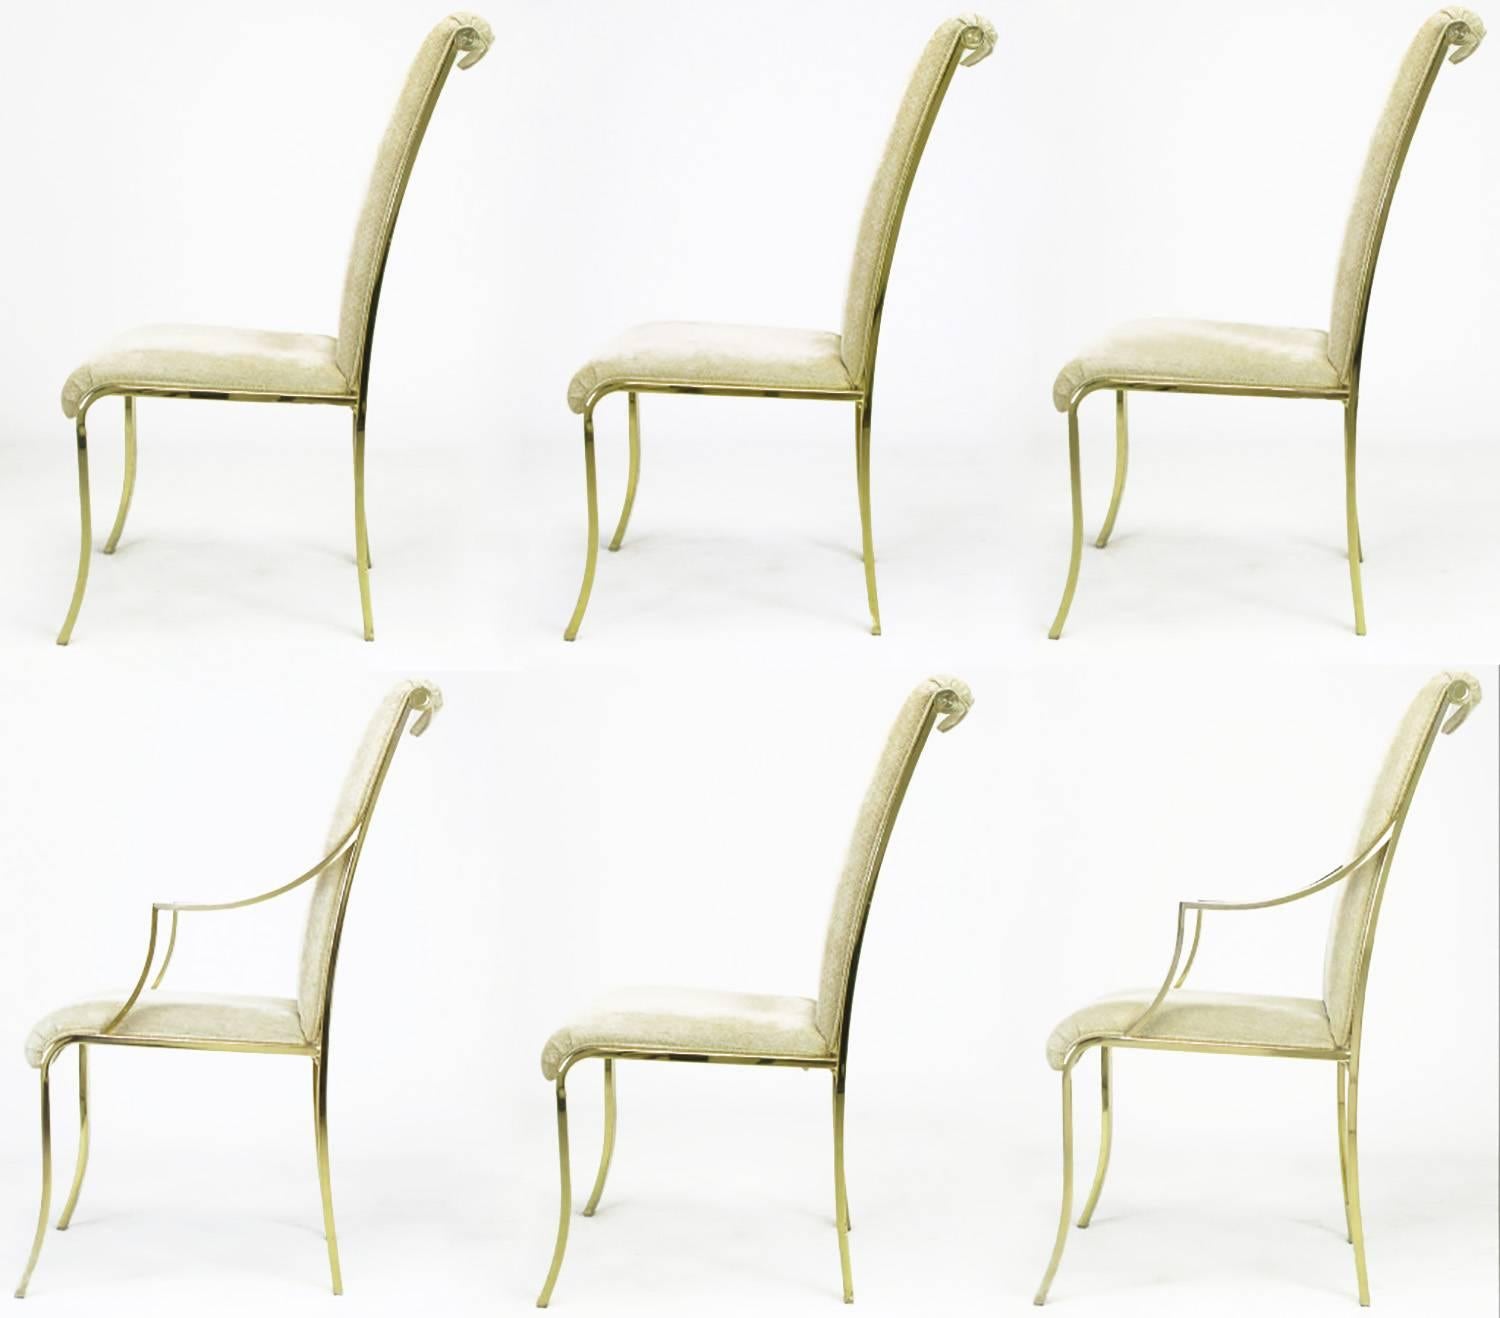 Satz von sechs gepolsterten Esszimmerstühlen des Design Institute of America aus Messing und Chenille mit Art-Déco-Details. Vier Beistellstühle und zwei Sessel mit einem dünnen, aber stabilen Flachstangengestell aus Messing. Kurven an den richtigen